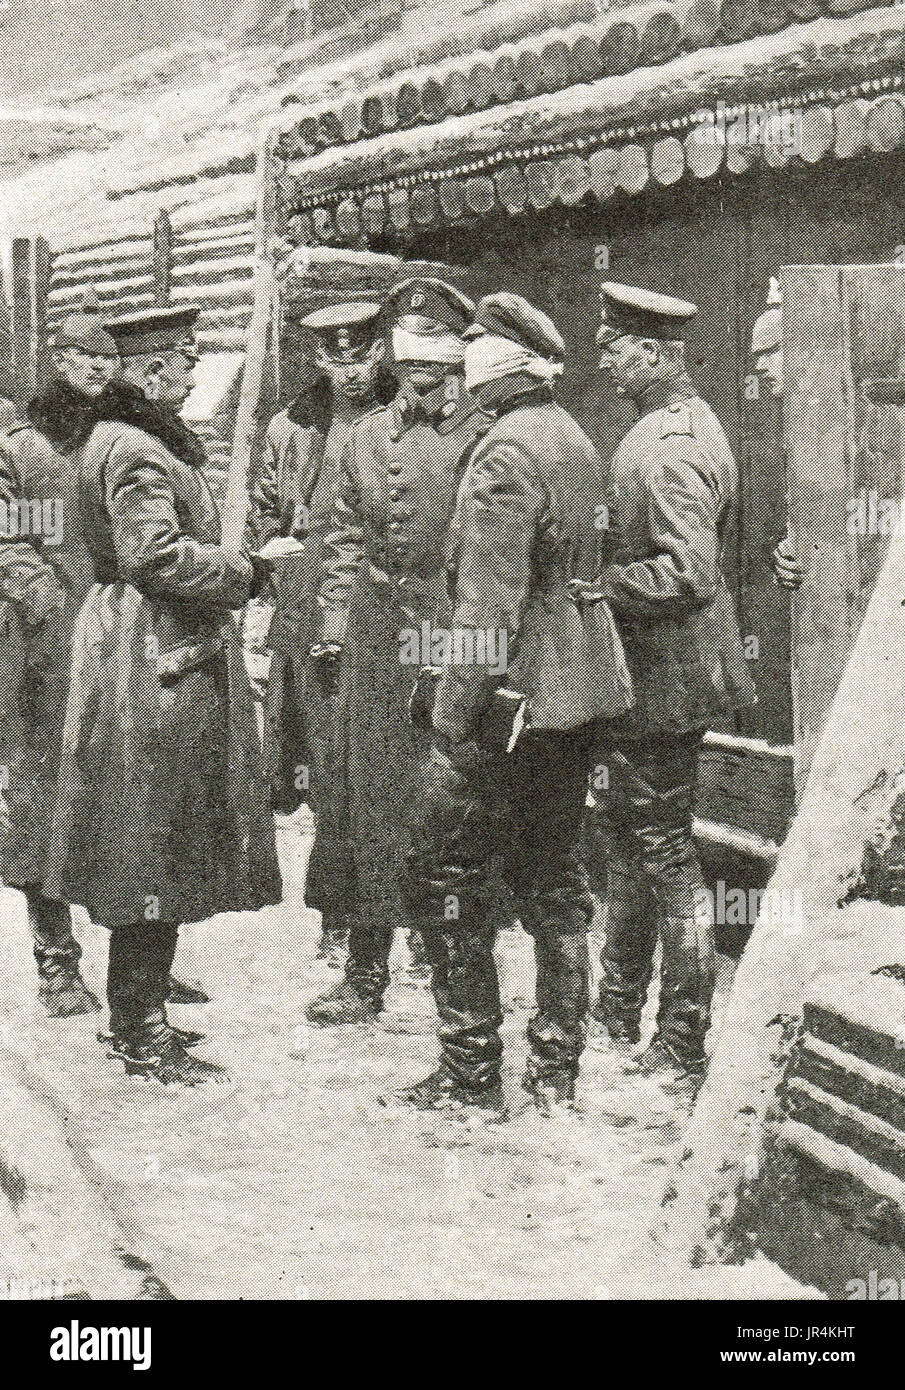 Les yeux bandés, envoyé spécial de la paix russe 1917 Banque D'Images